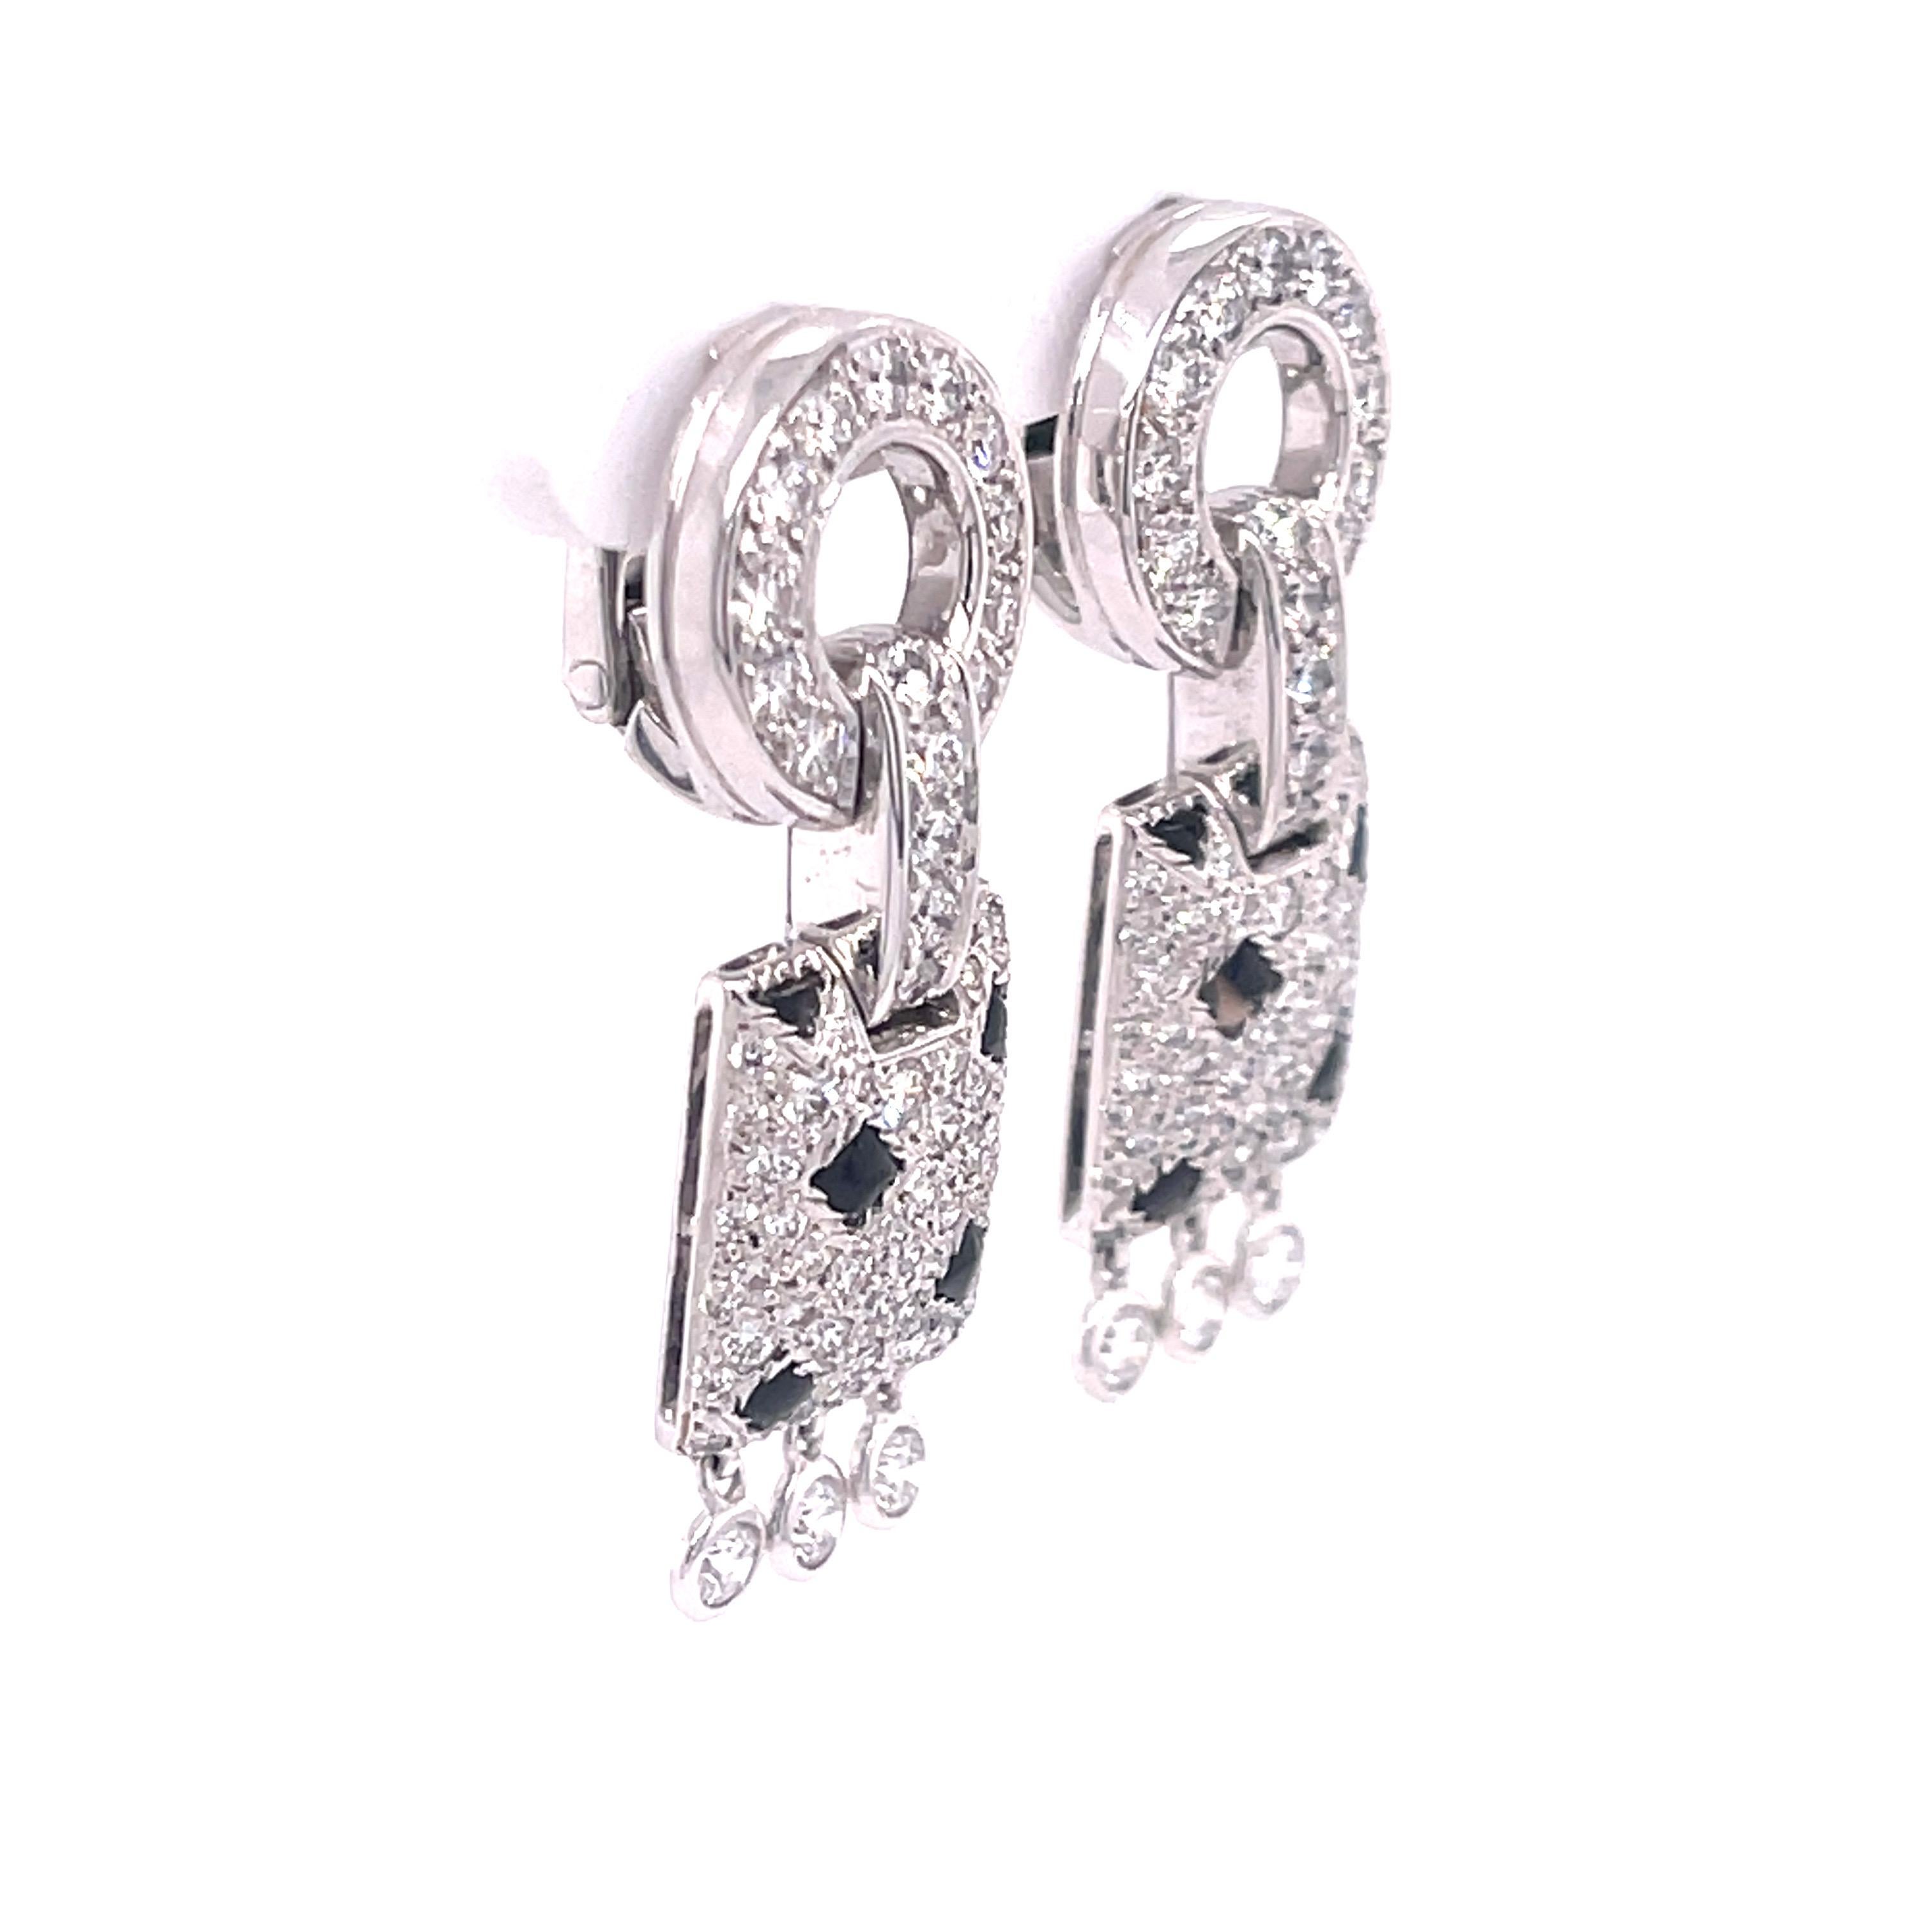 Boucles d'oreilles Cartier Panthère Pelage Onyx et Diamants en or blanc 18K. Les boucles d'oreilles comportent environ 1ctw de diamants taille brillant, couleur G+, clarté VS. 